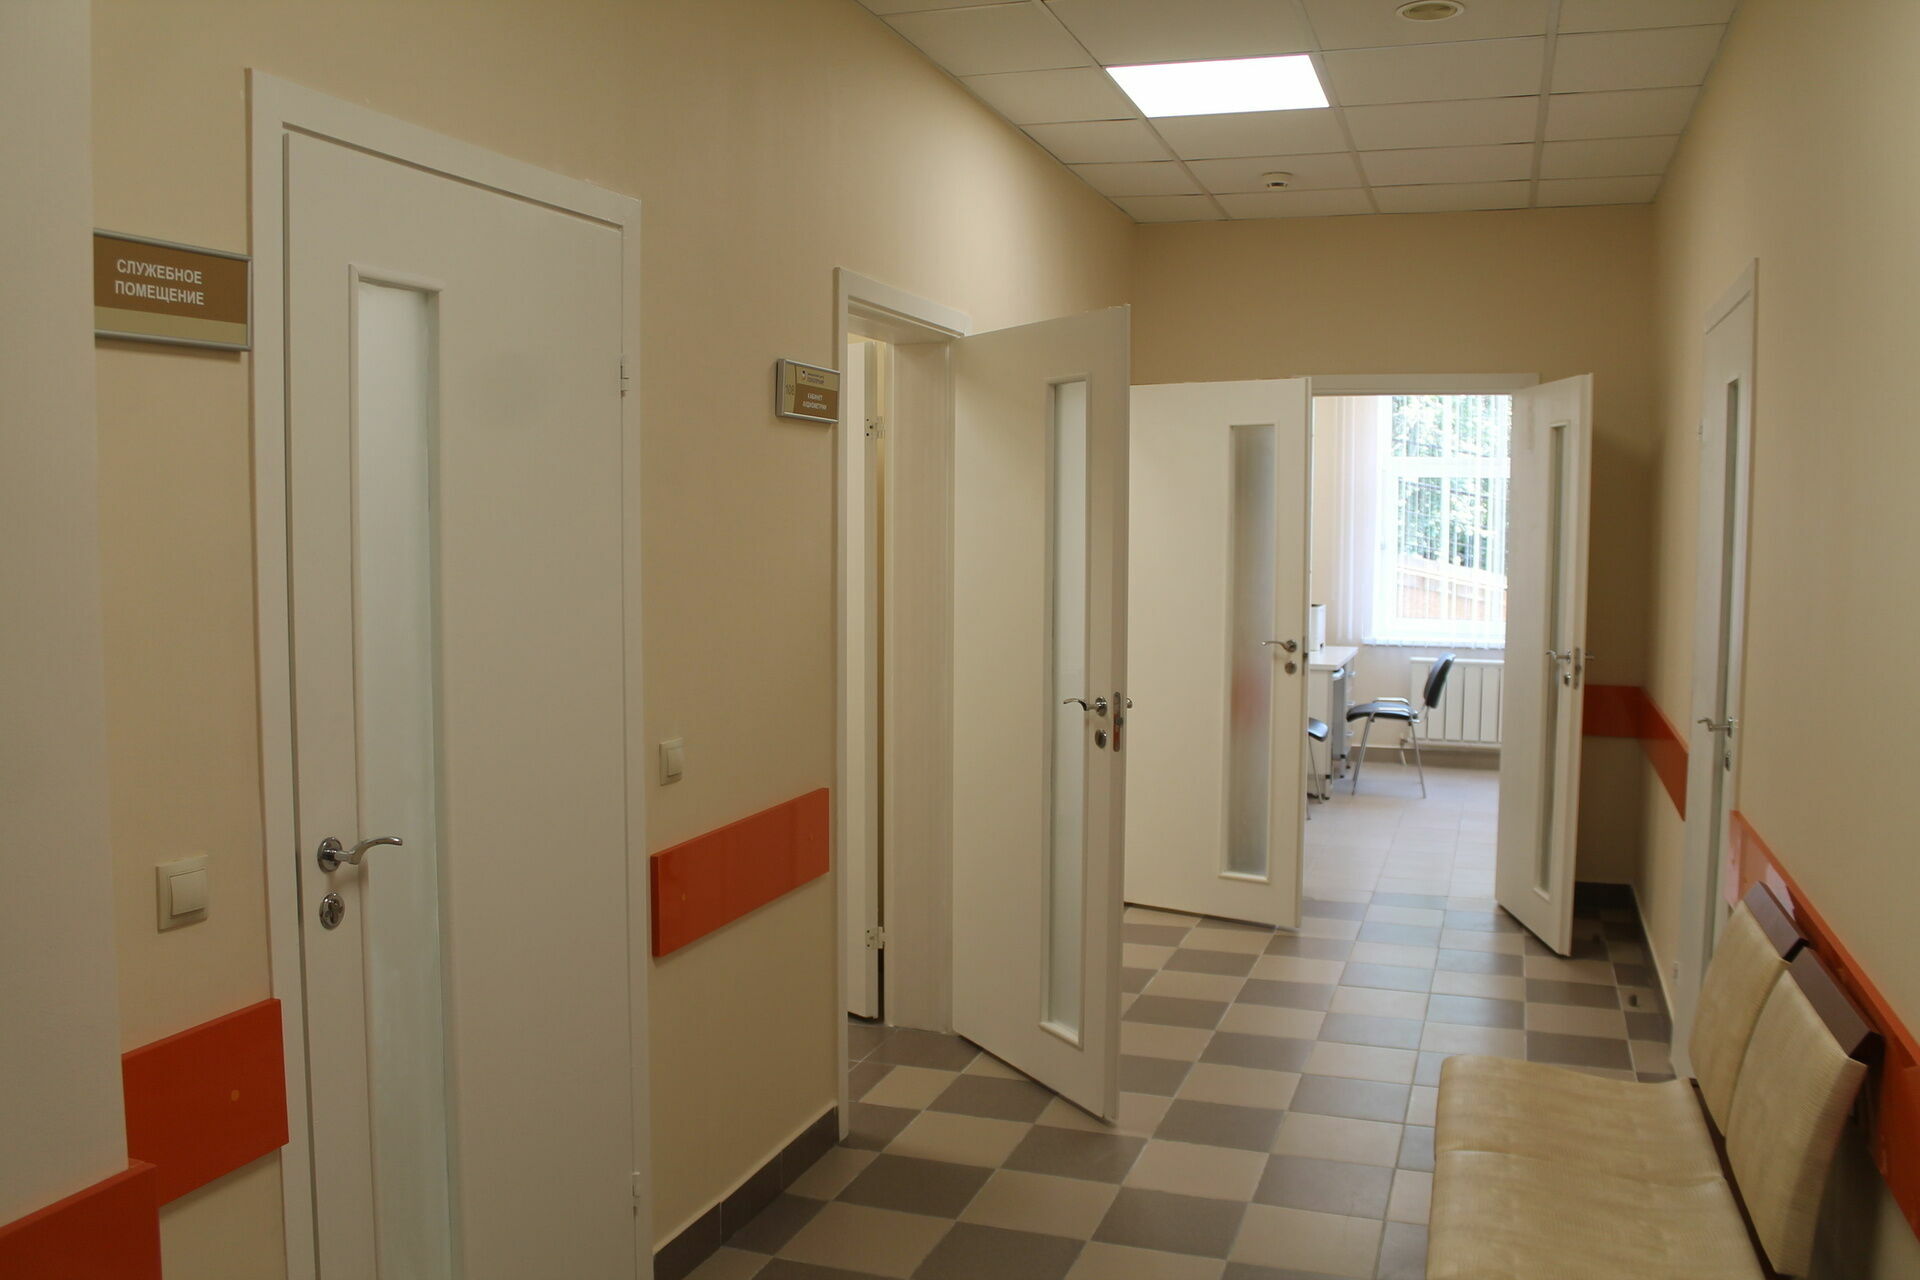 Новую поликлинику построят вместо рекреационной зоны в микрорайоне Петрозаводска